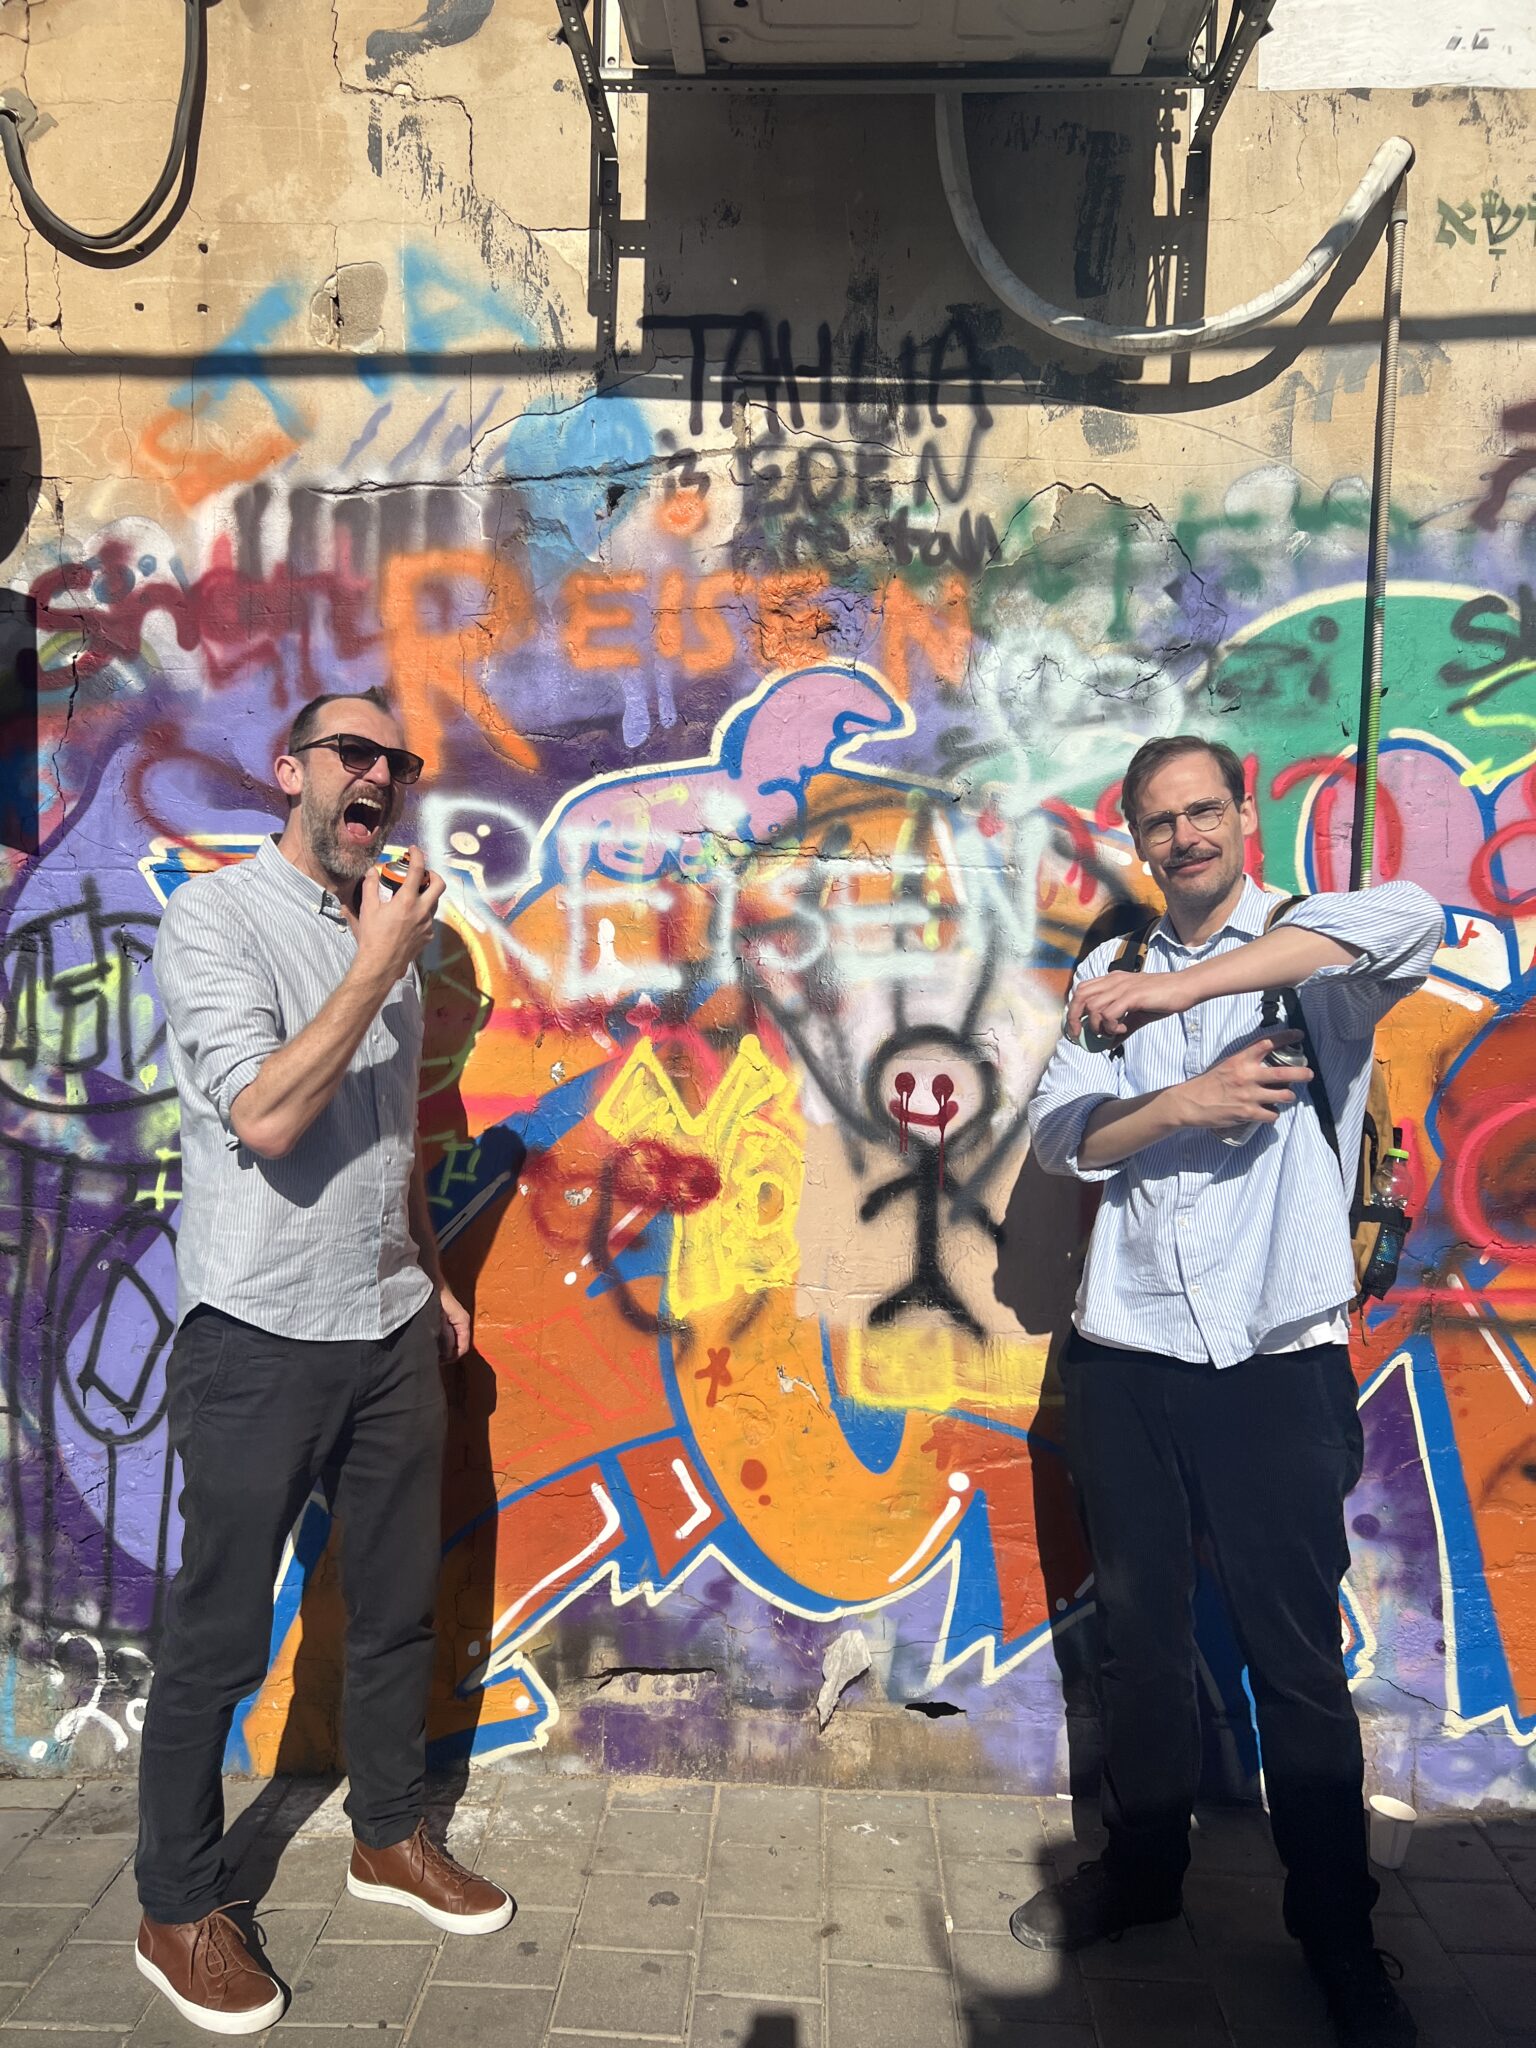 Michael und Jochen haben Reisen Reisen auf eine Graffiti-Wand gesprüht und posen witzig davor. Michael tut so als würde er sich mit der Dose in den Mund sprühen, Jochen benutzt sie scheinbar als Deospray